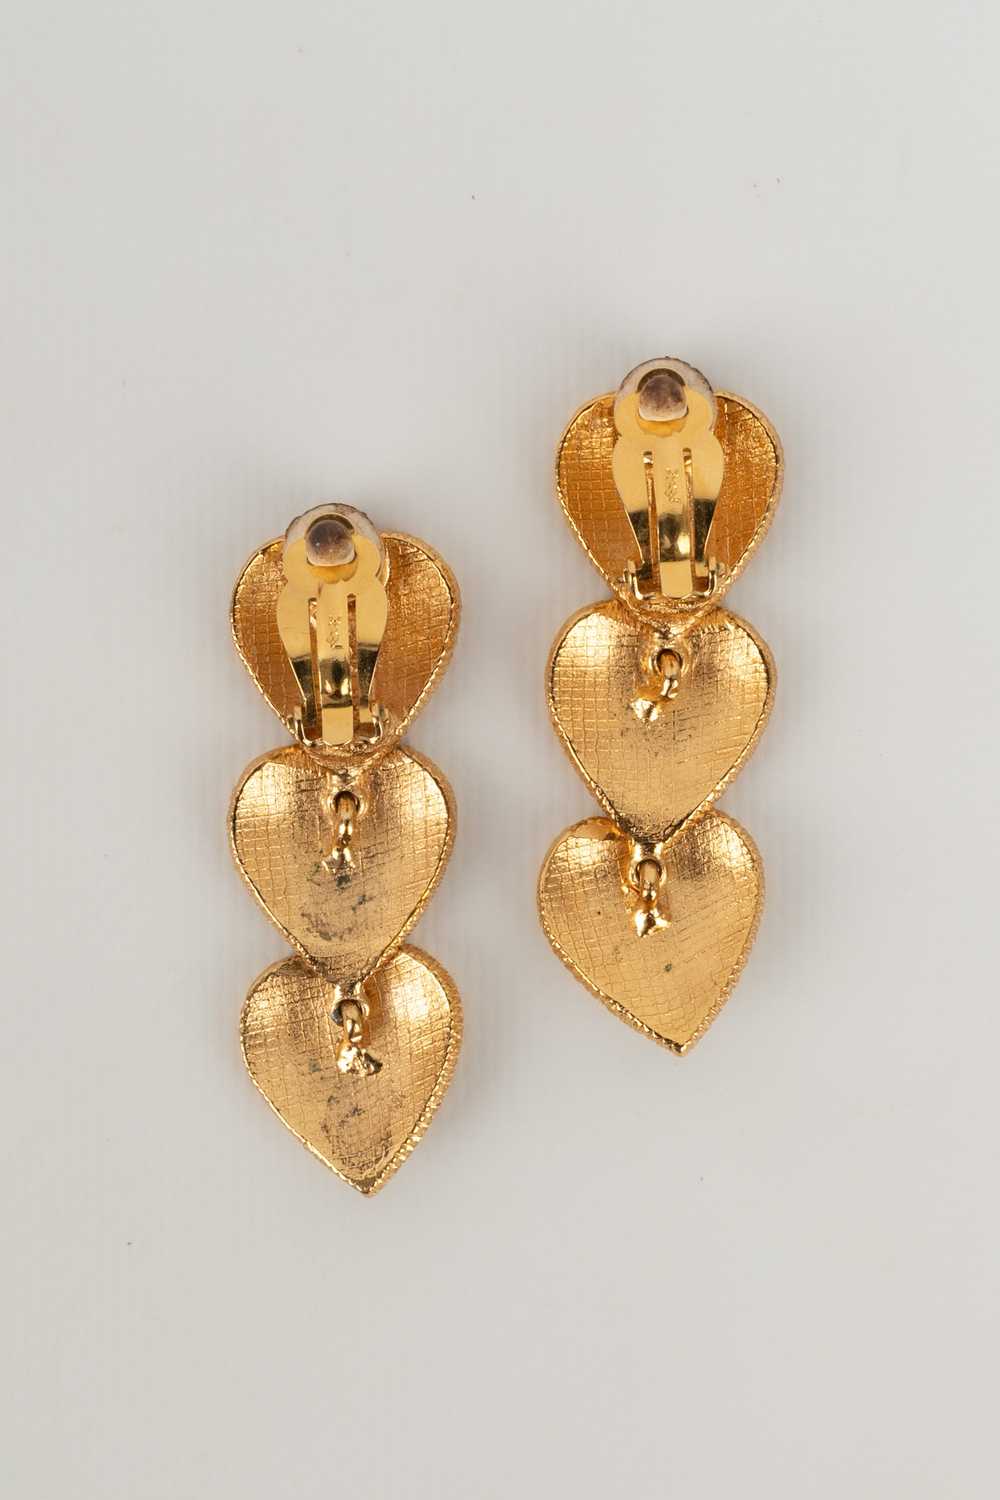 Yves Saint Laurent heart earrings - image 6